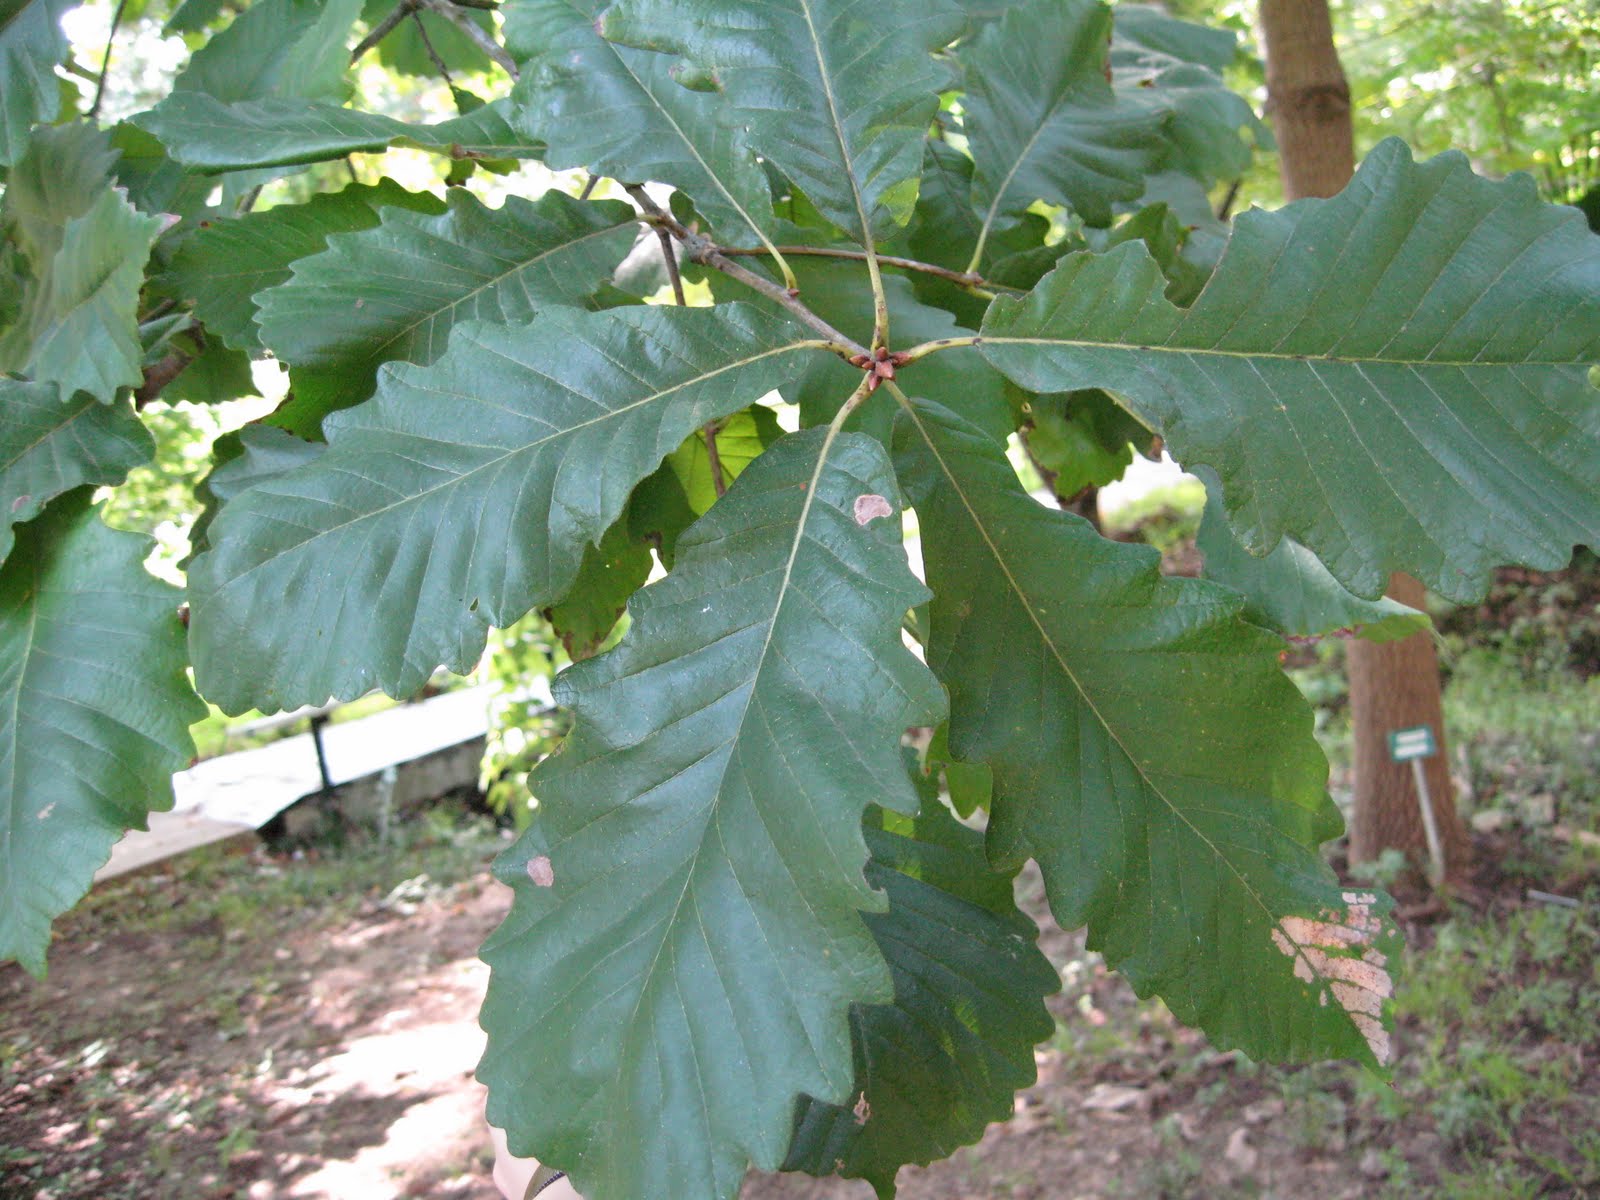 Centenary College Arboretum: Quercus michauxii
